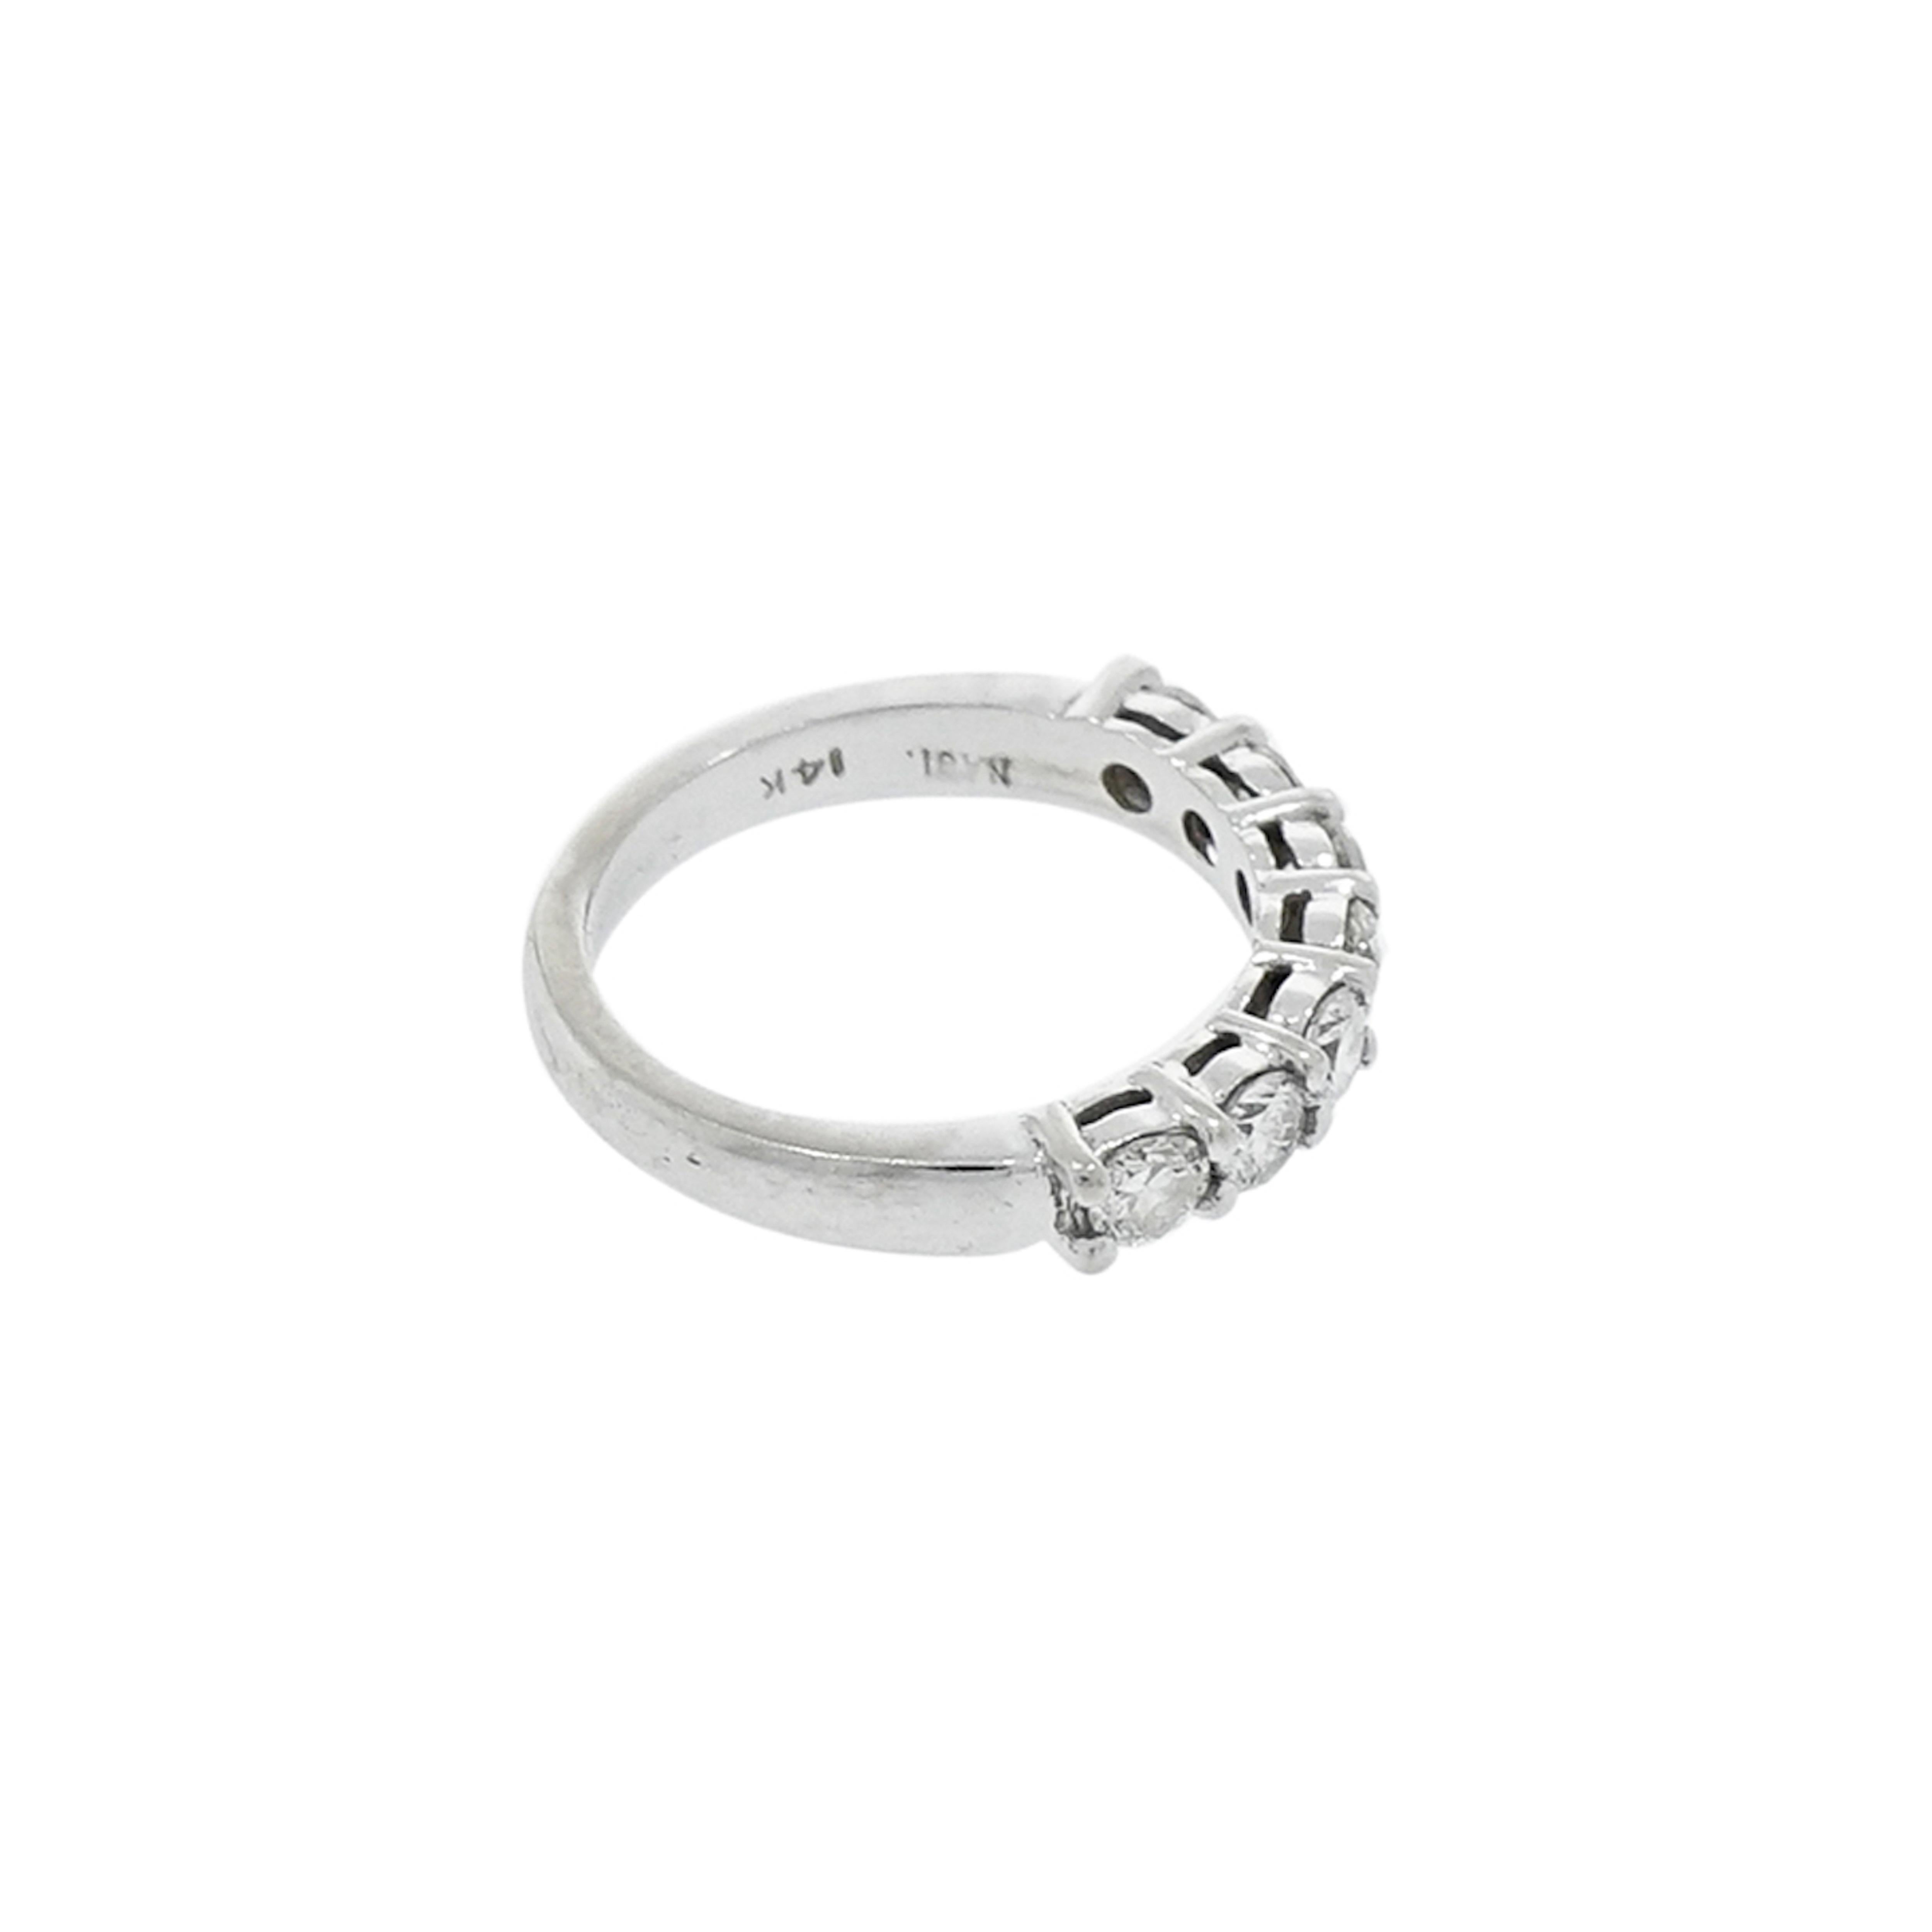 Cette éblouissante bague de mariage/anniversaire en diamant Seven Stones est ornée de diamants blancs ronds de 0,85 carat, H/SI 1. La bande mesure 3,5 mm de large et est conçue pour un doigt de taille 5 mais peut être adaptée.
